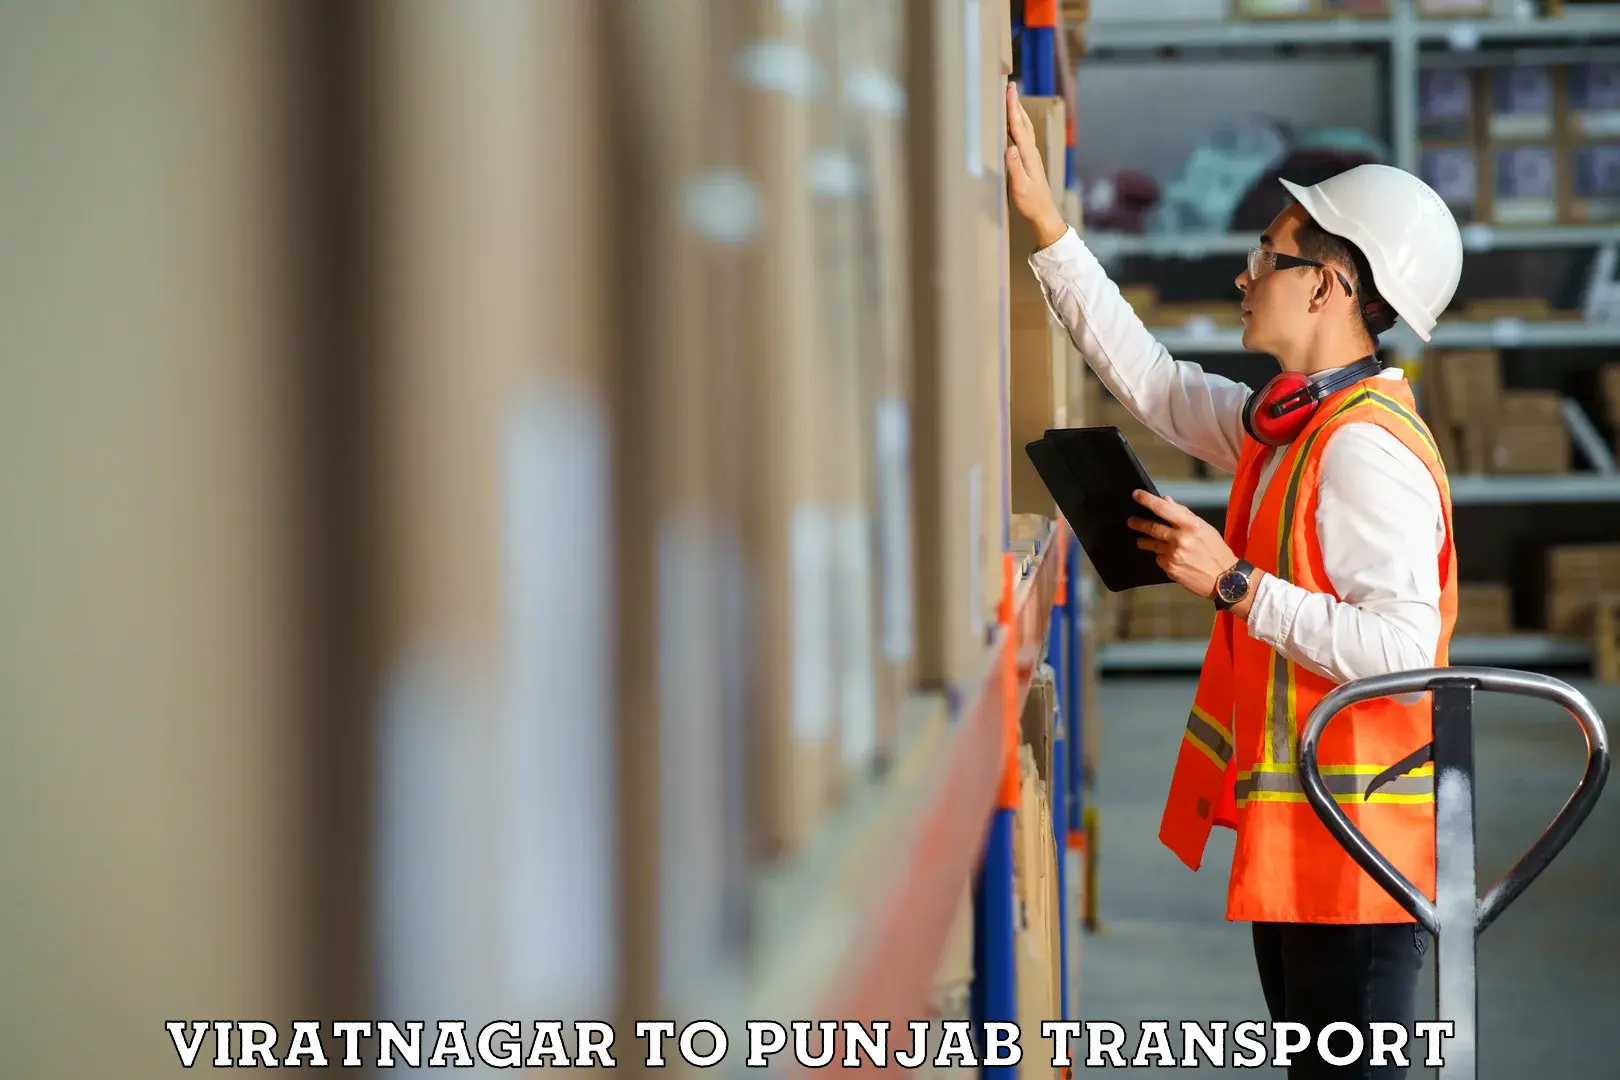 Furniture transport service Viratnagar to Talwara